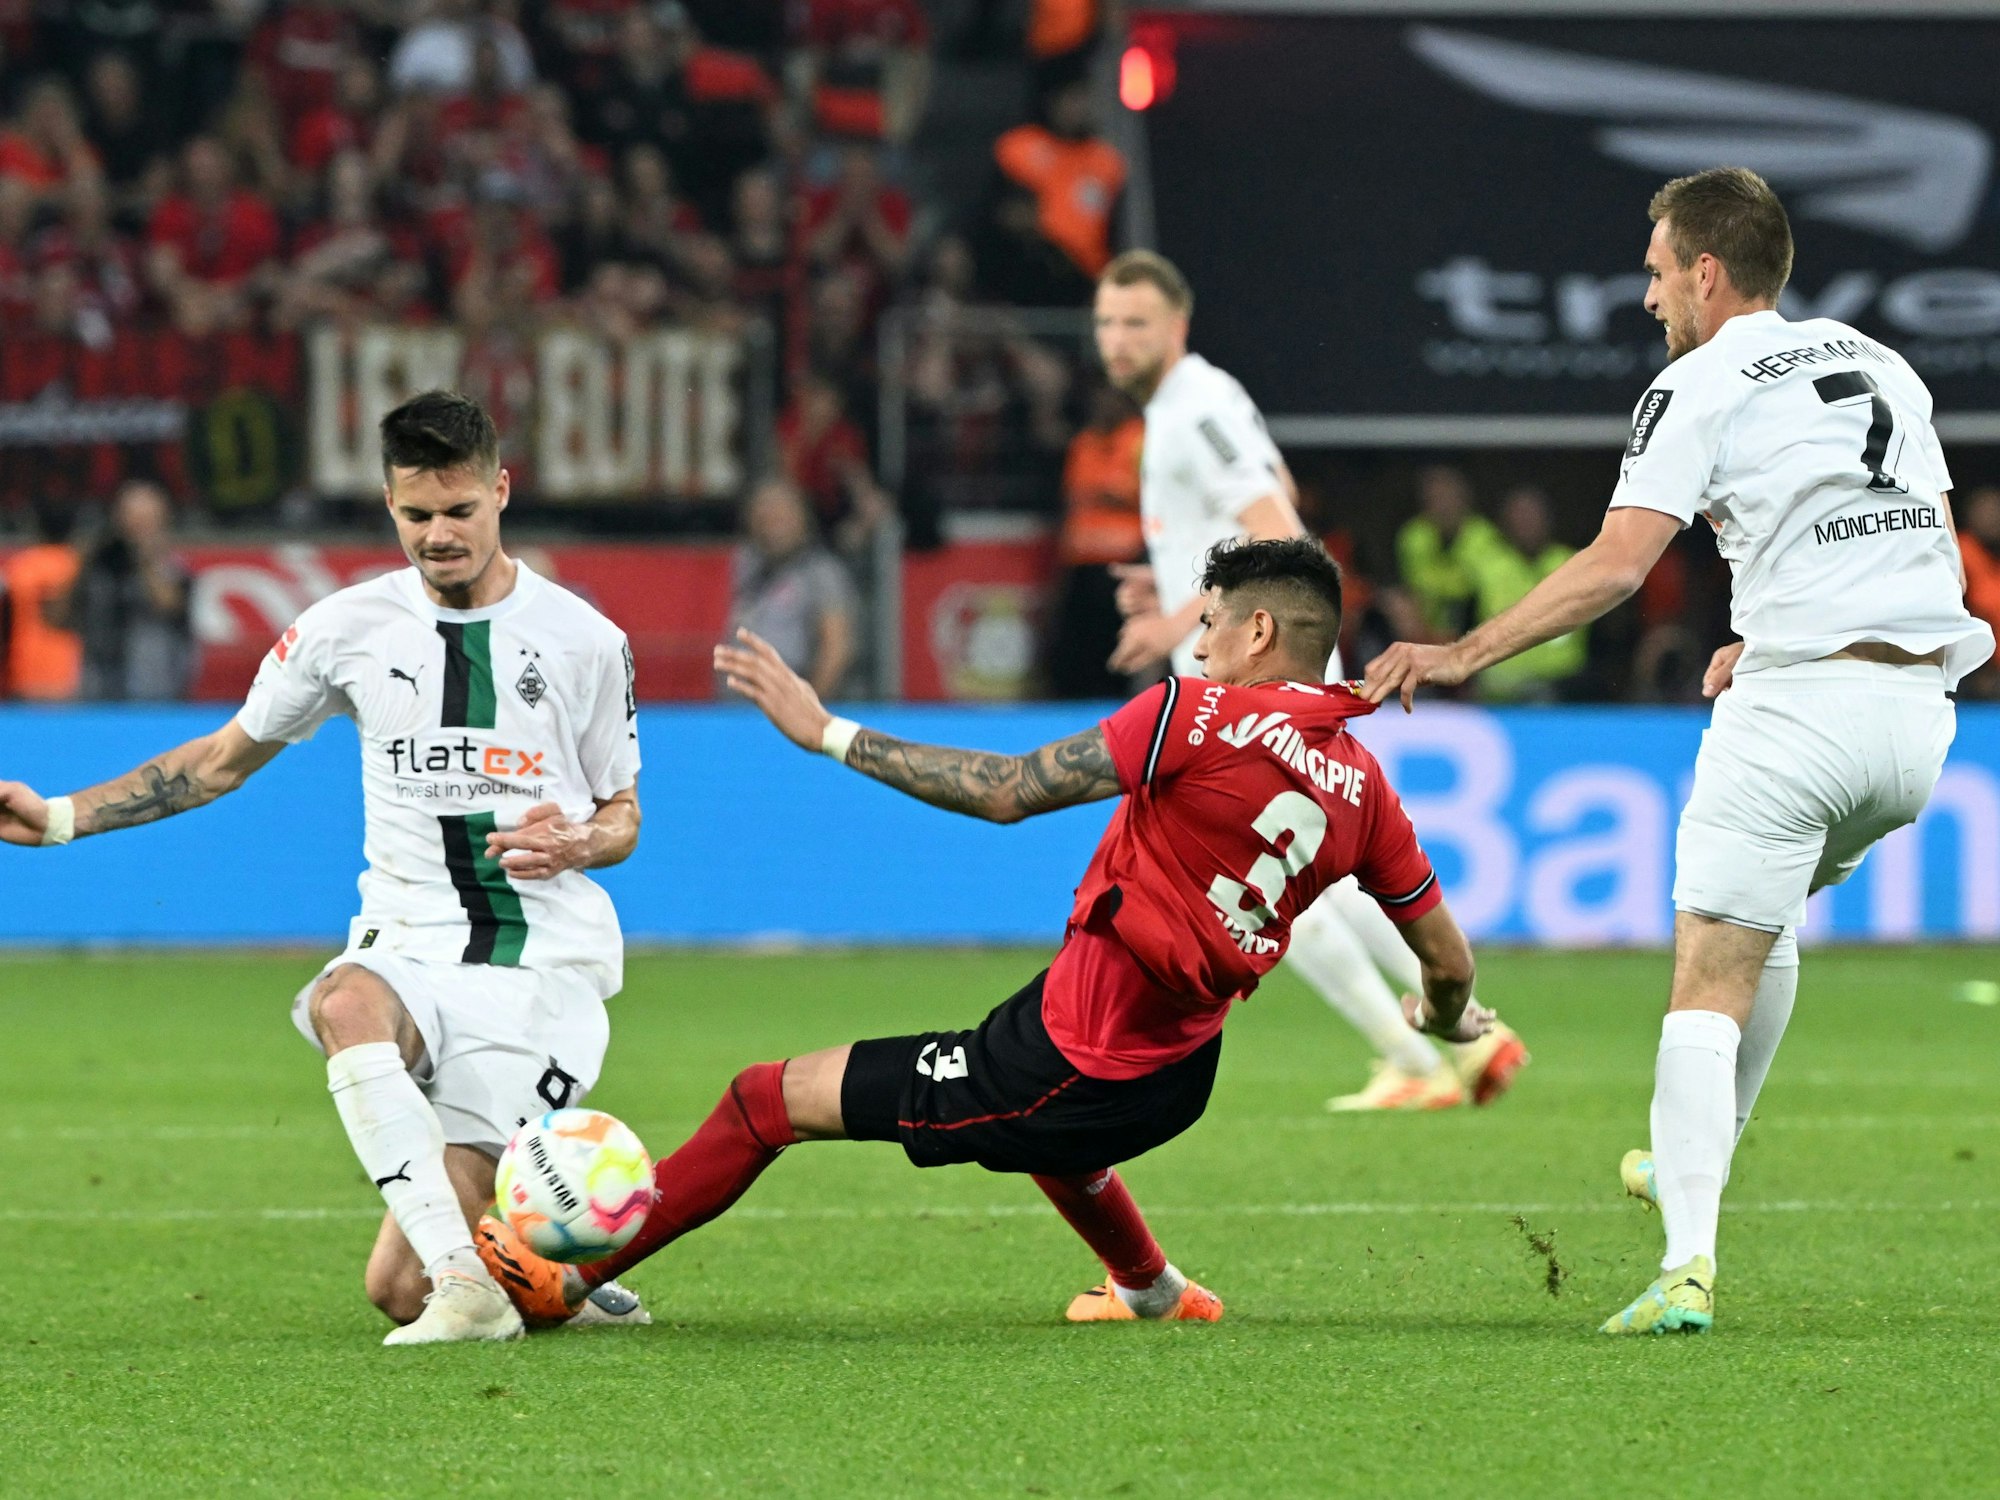 Leverkusens Piero Hincapie foult Mönchengladbachs Julian Weigl mit offener Sohle.